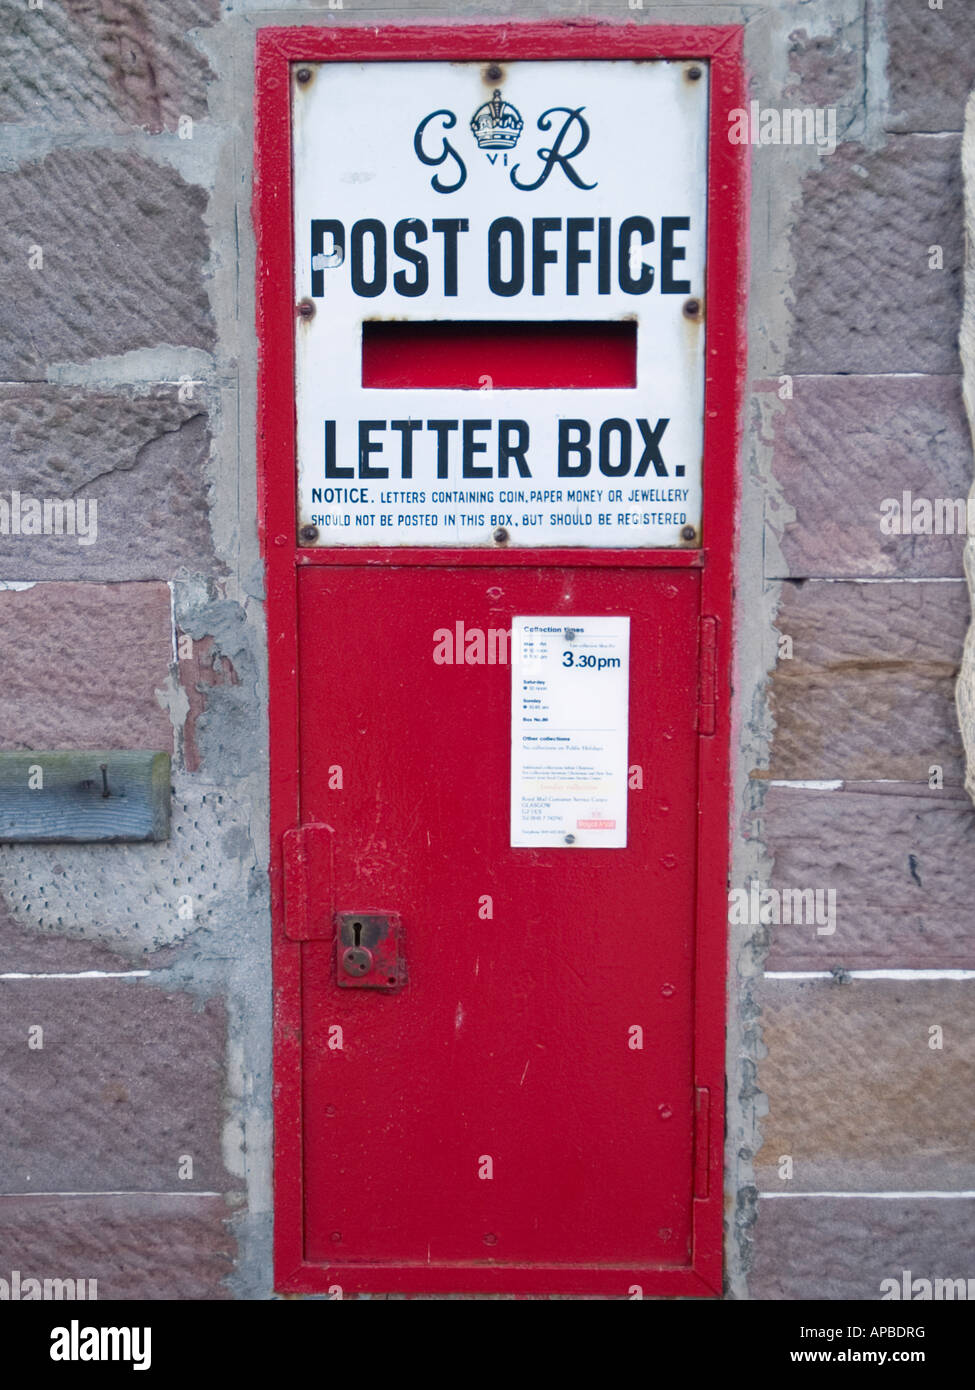 George Vl Letterbox rouge dans mur de pierre en village de conservation Luss Argyll et Bute Ecosse Royaume-Uni Grande-Bretagne Banque D'Images